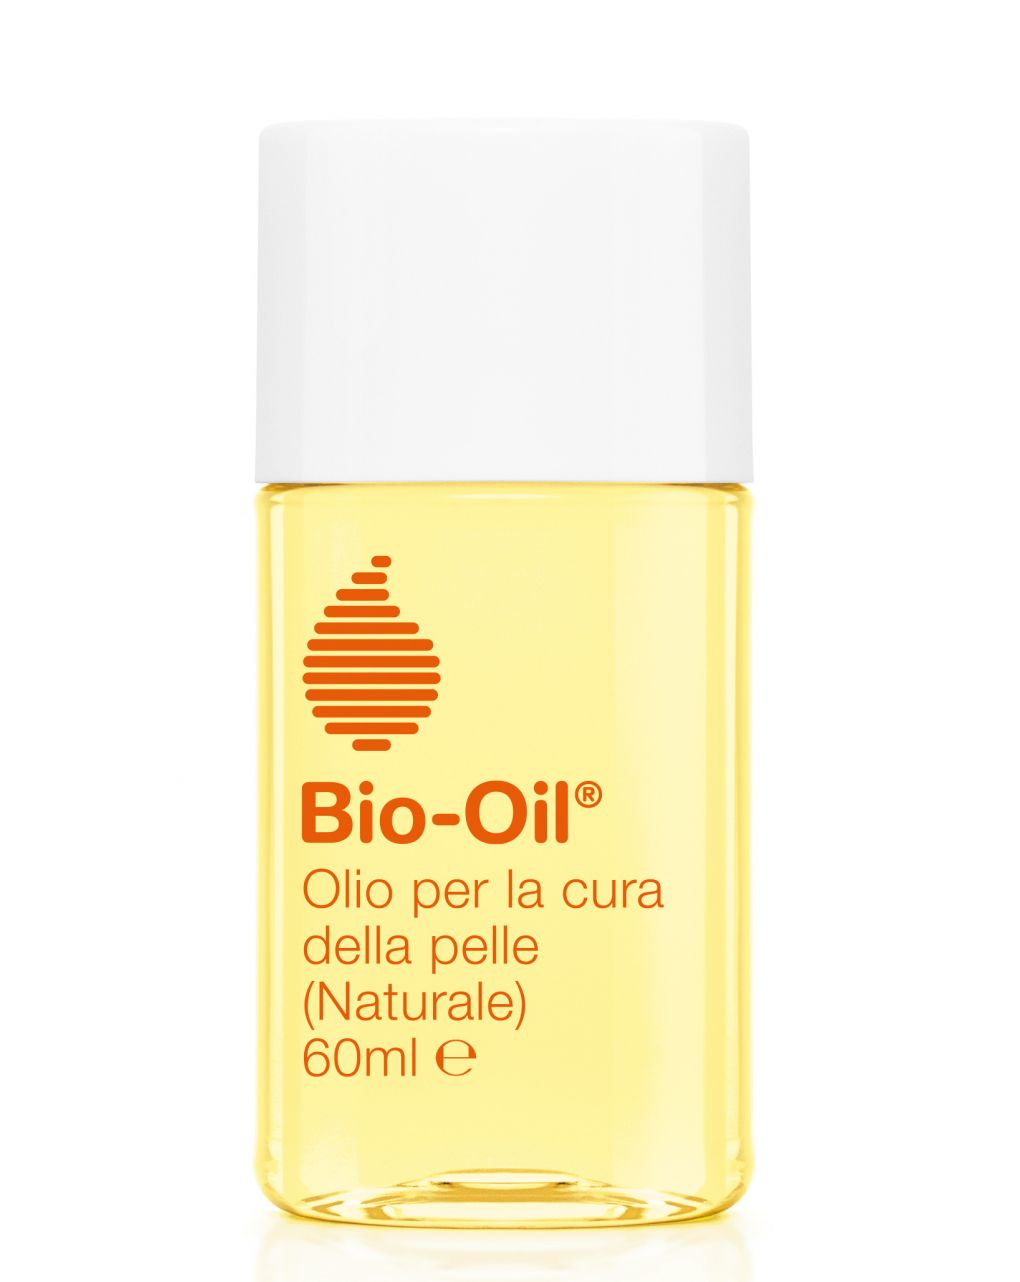 Bio-oil olio naturale 60 ml - Bio-Oil